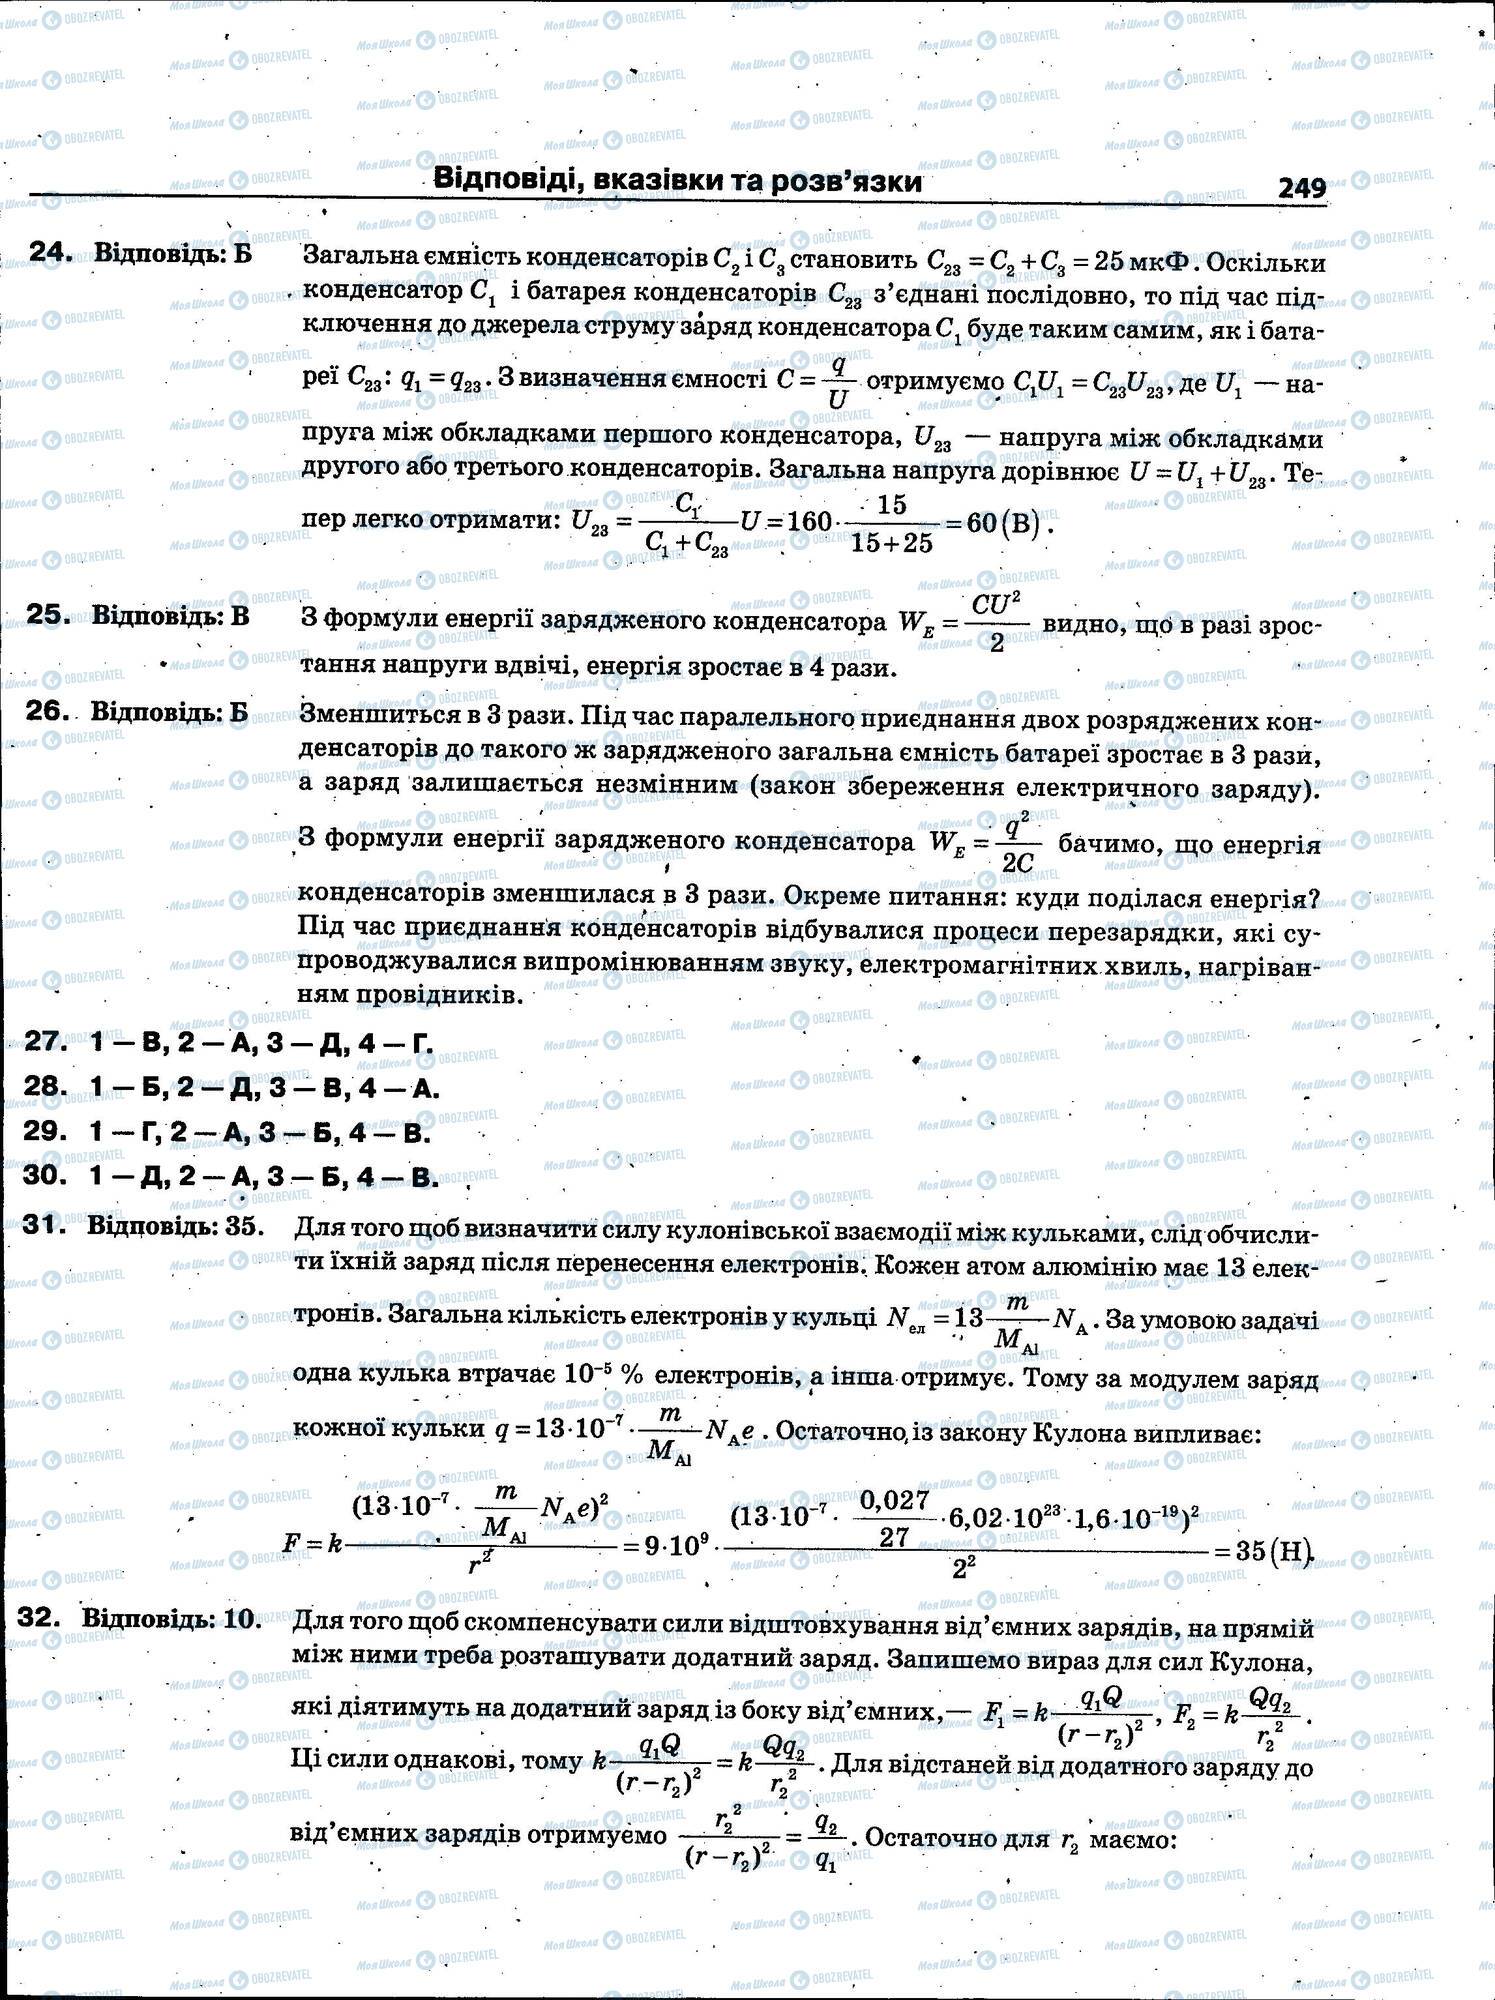 ЗНО Физика 11 класс страница 249